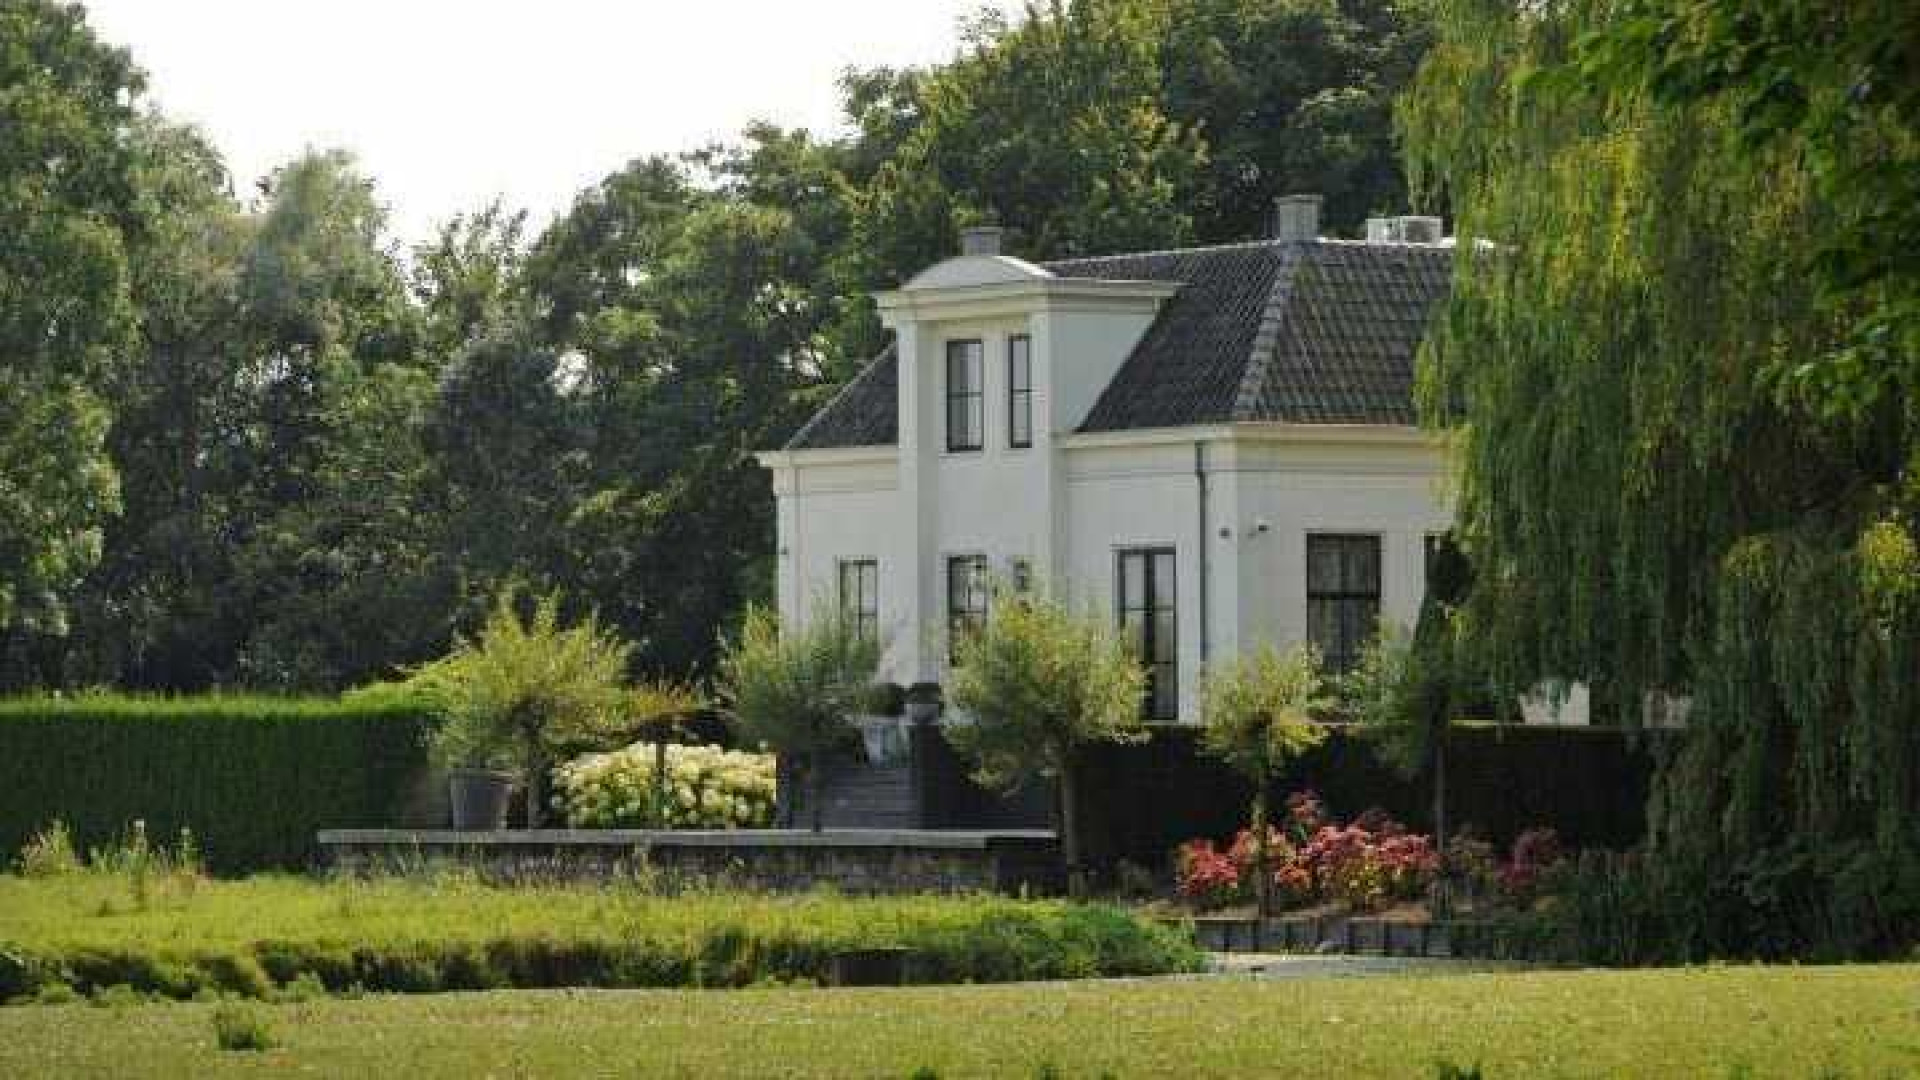 Huis Sonja Bakker met fors verlies verkocht. Zie foto's 19